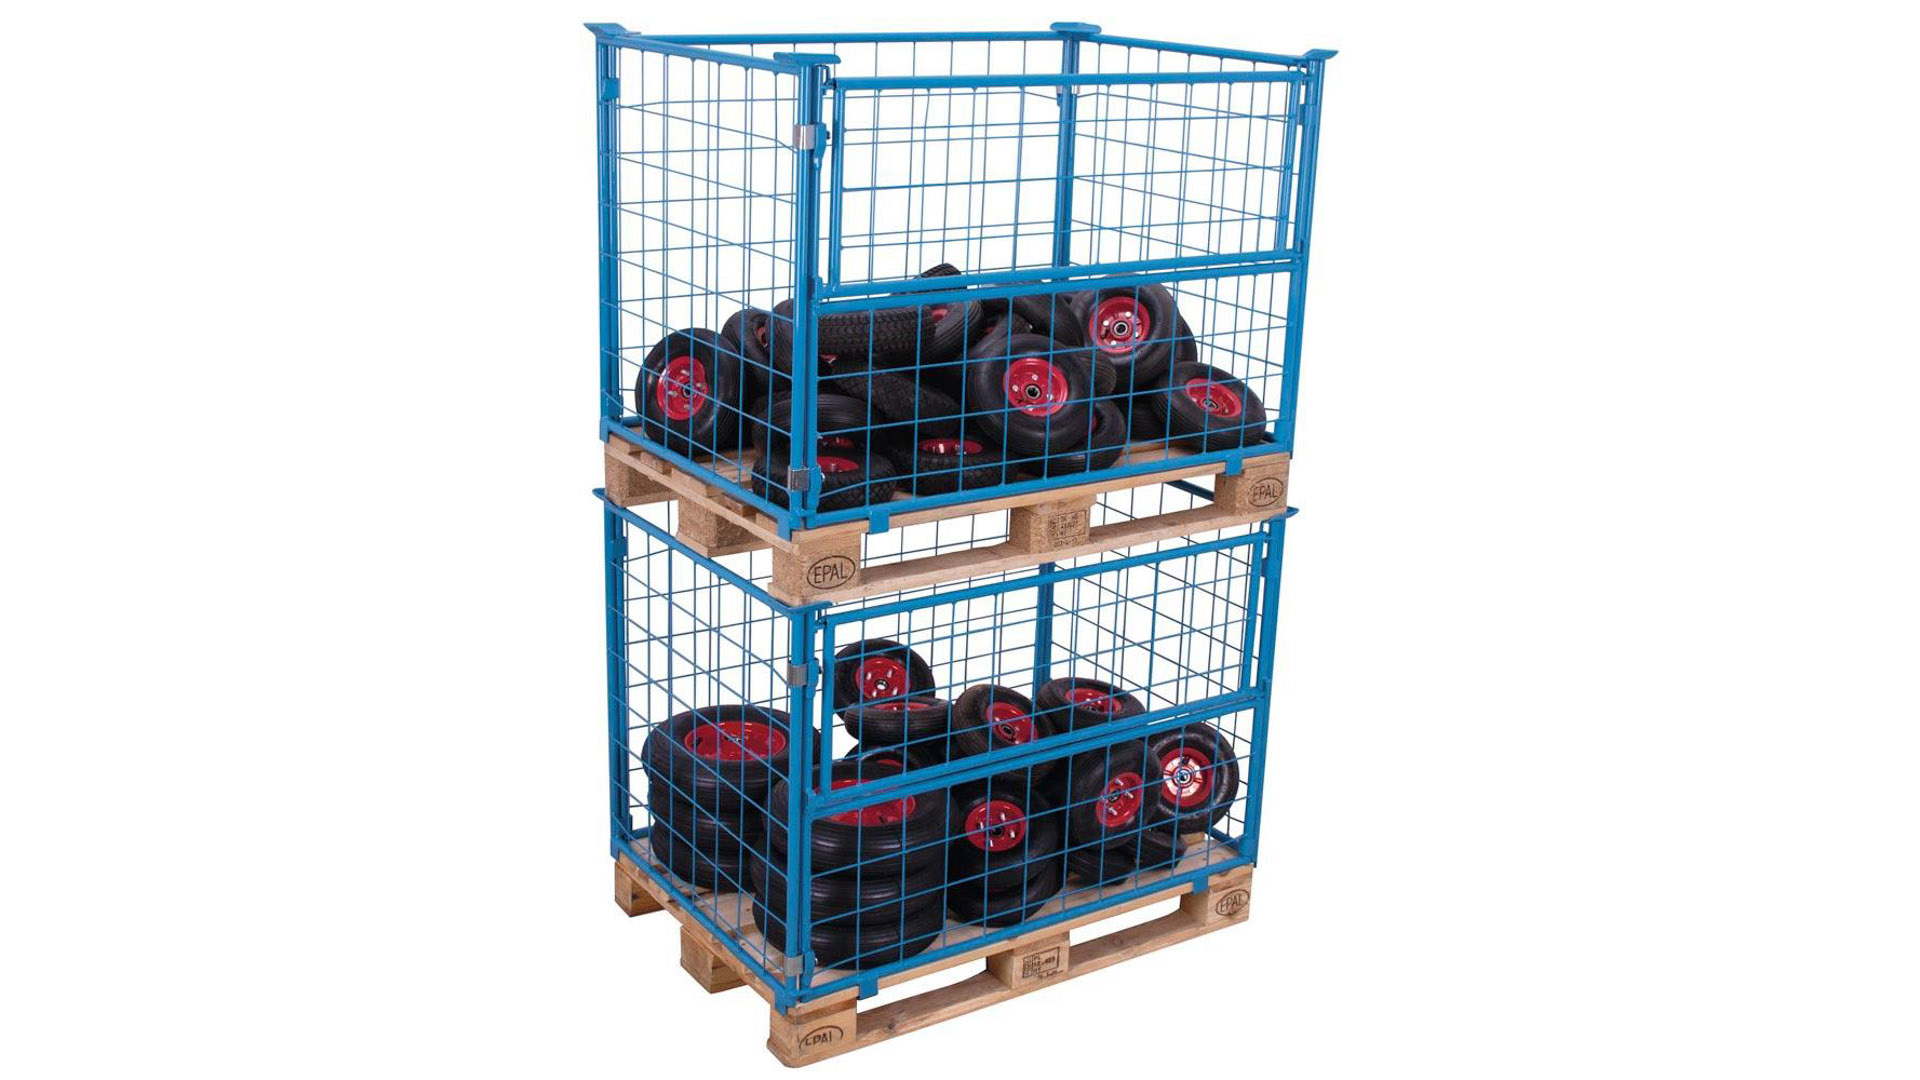 Palettenaufsatzrahmen für Industriepalette - 750 kg - Höhe 1.200 mm - 4-fach stapelbar - Gitter 1x klappbar - lichtblau